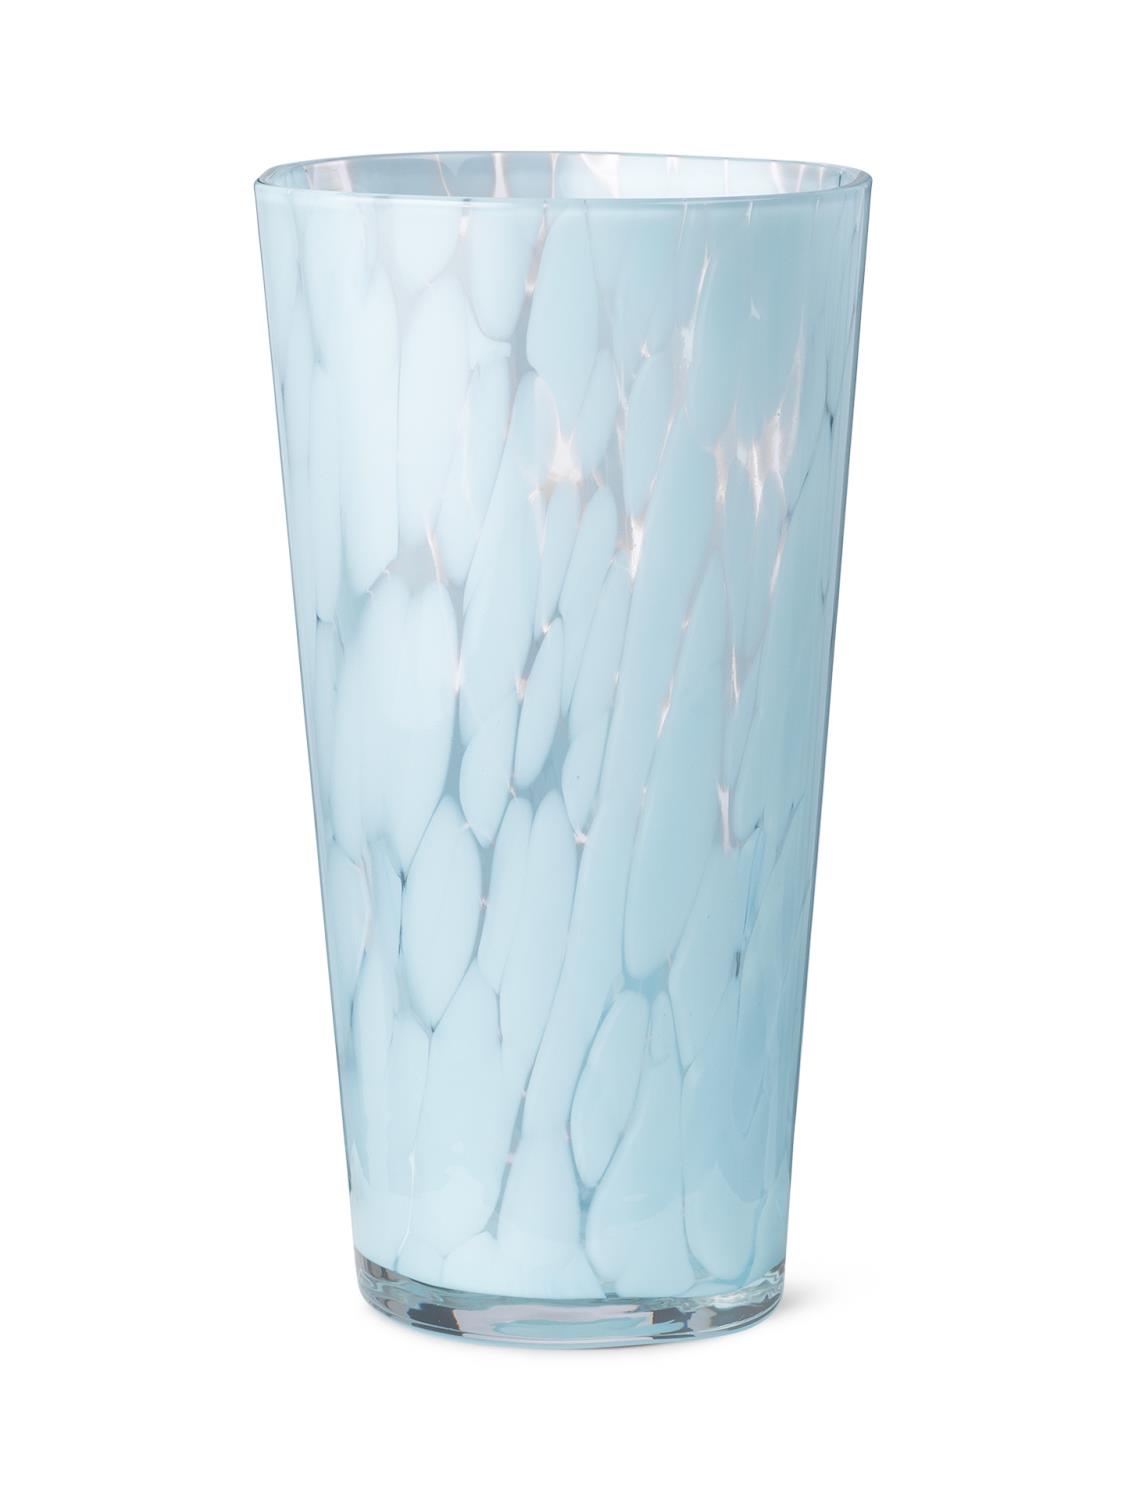 Ferm Living - Casca Vase - Pale Blue